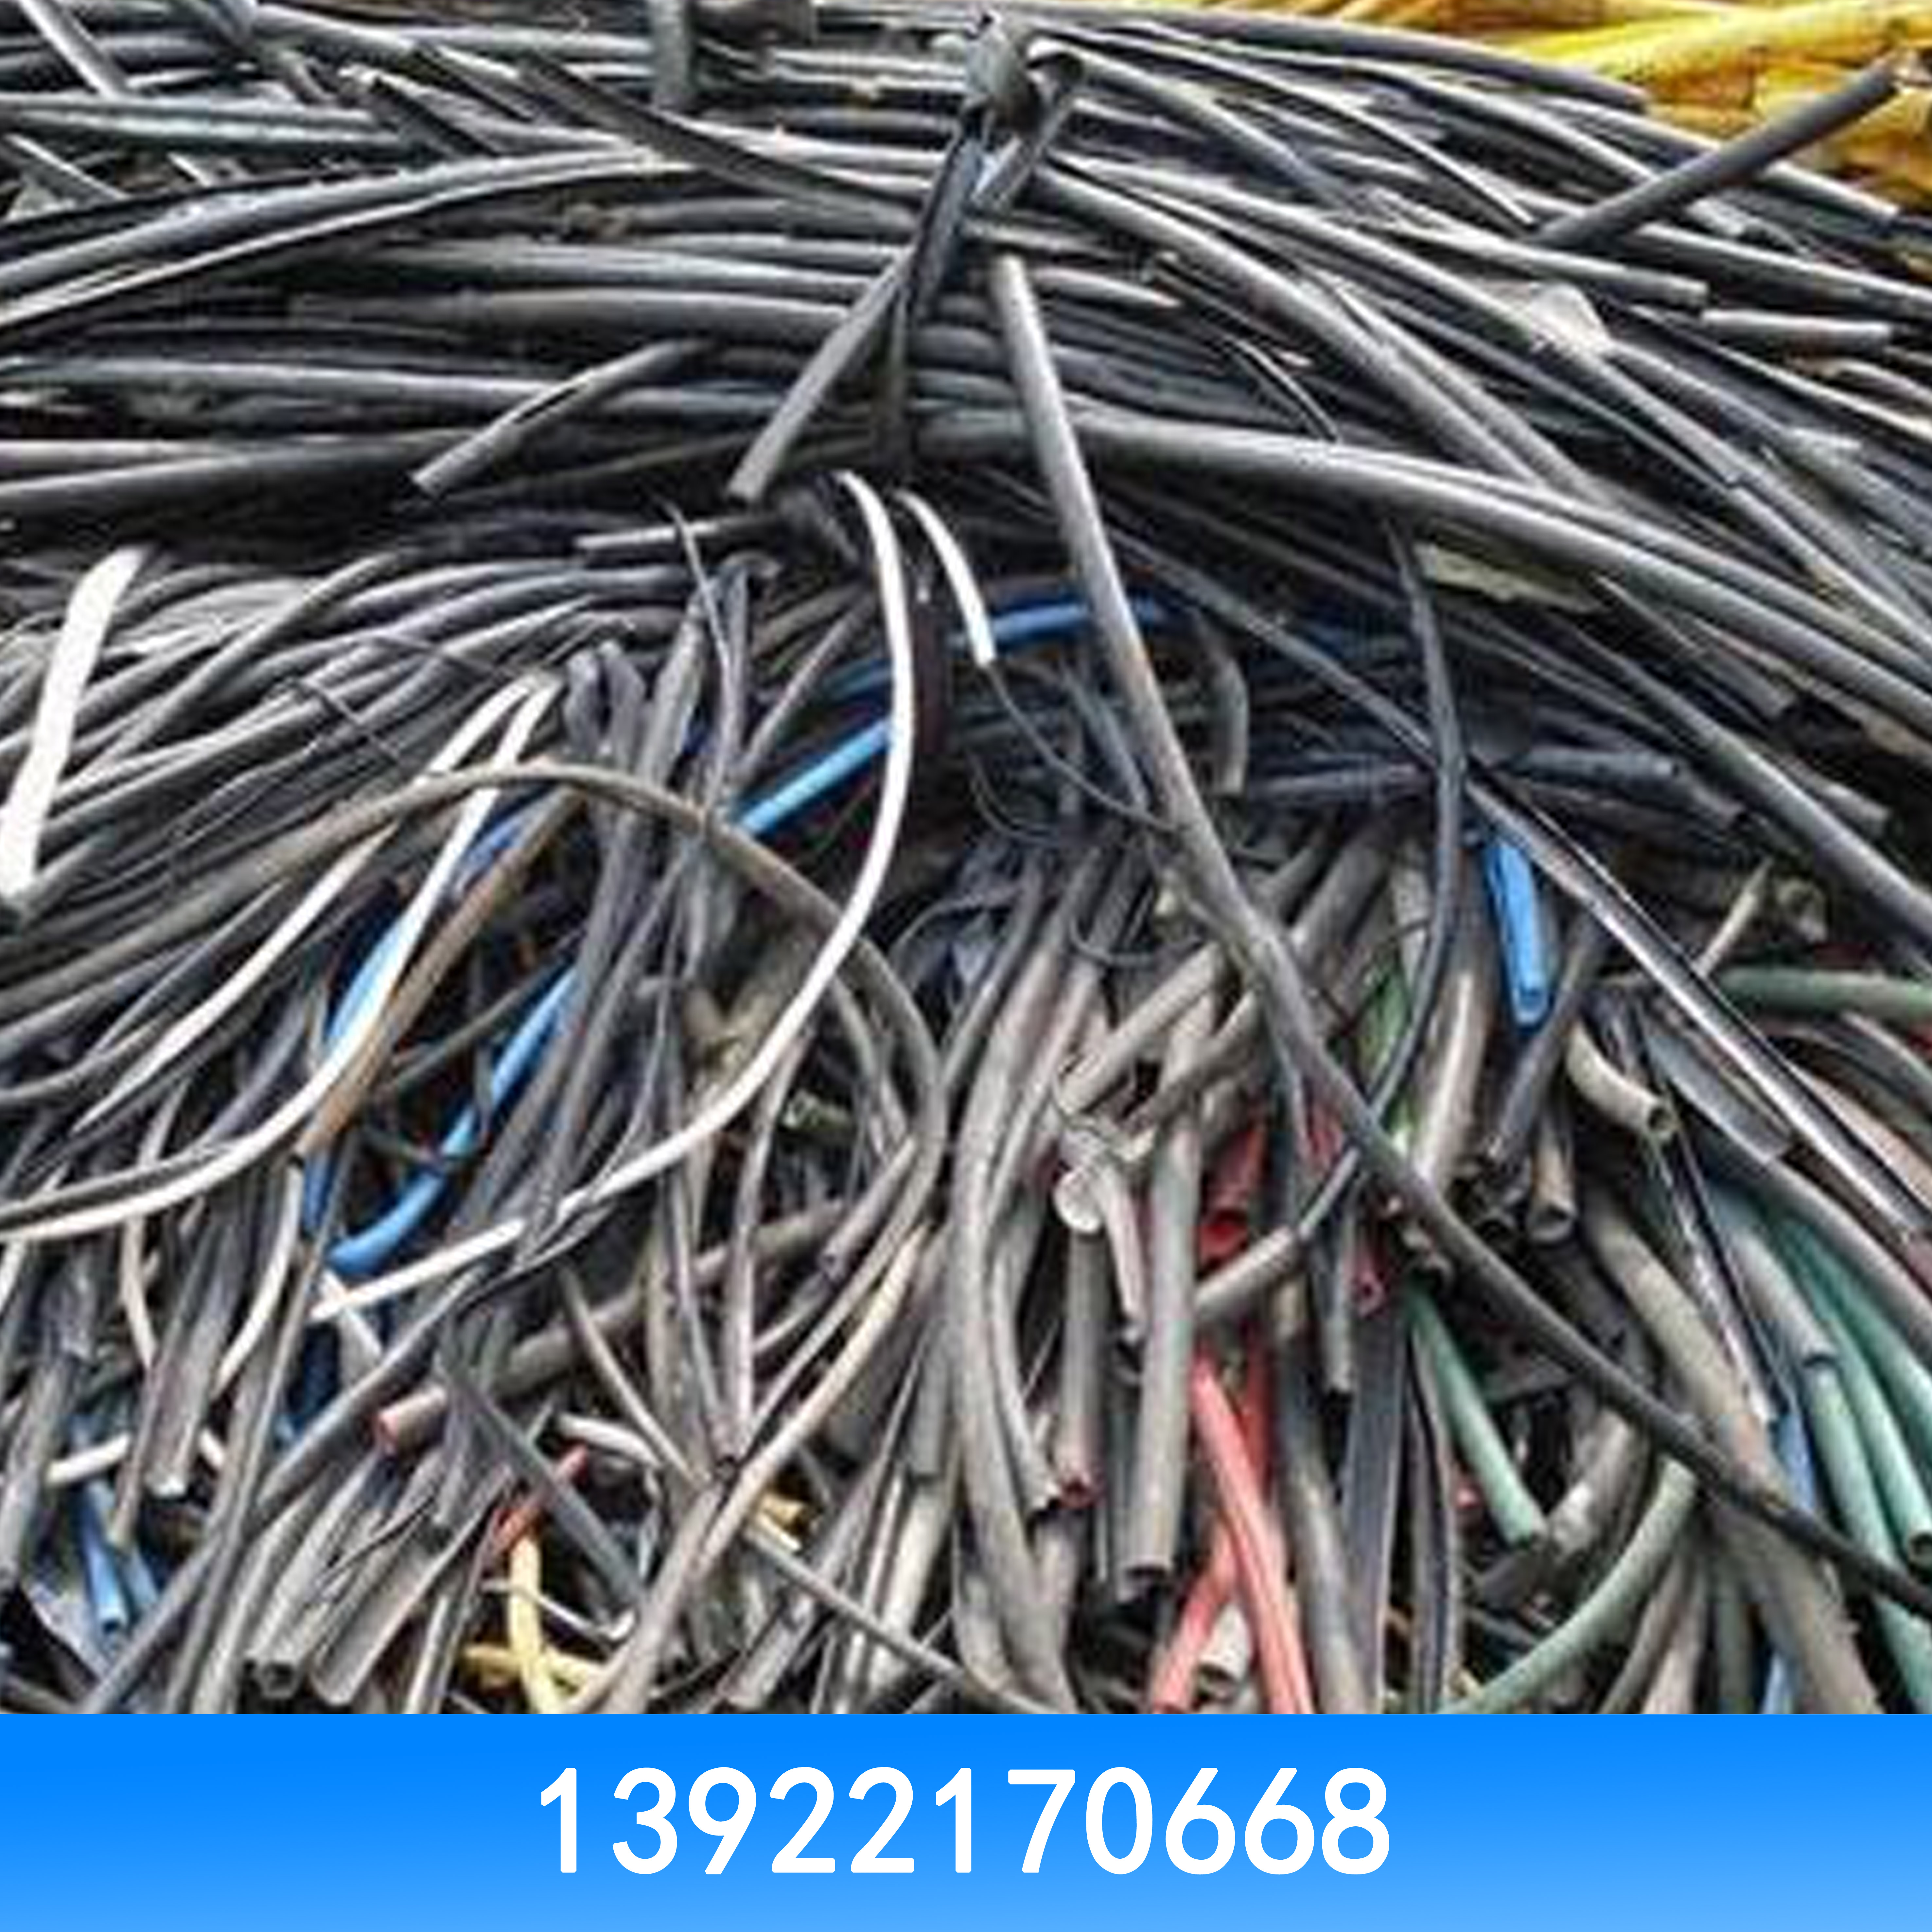 高价回收电线电缆 高价回收二手电线电缆 二手电线电缆回收 电线电缆回收价目表图片